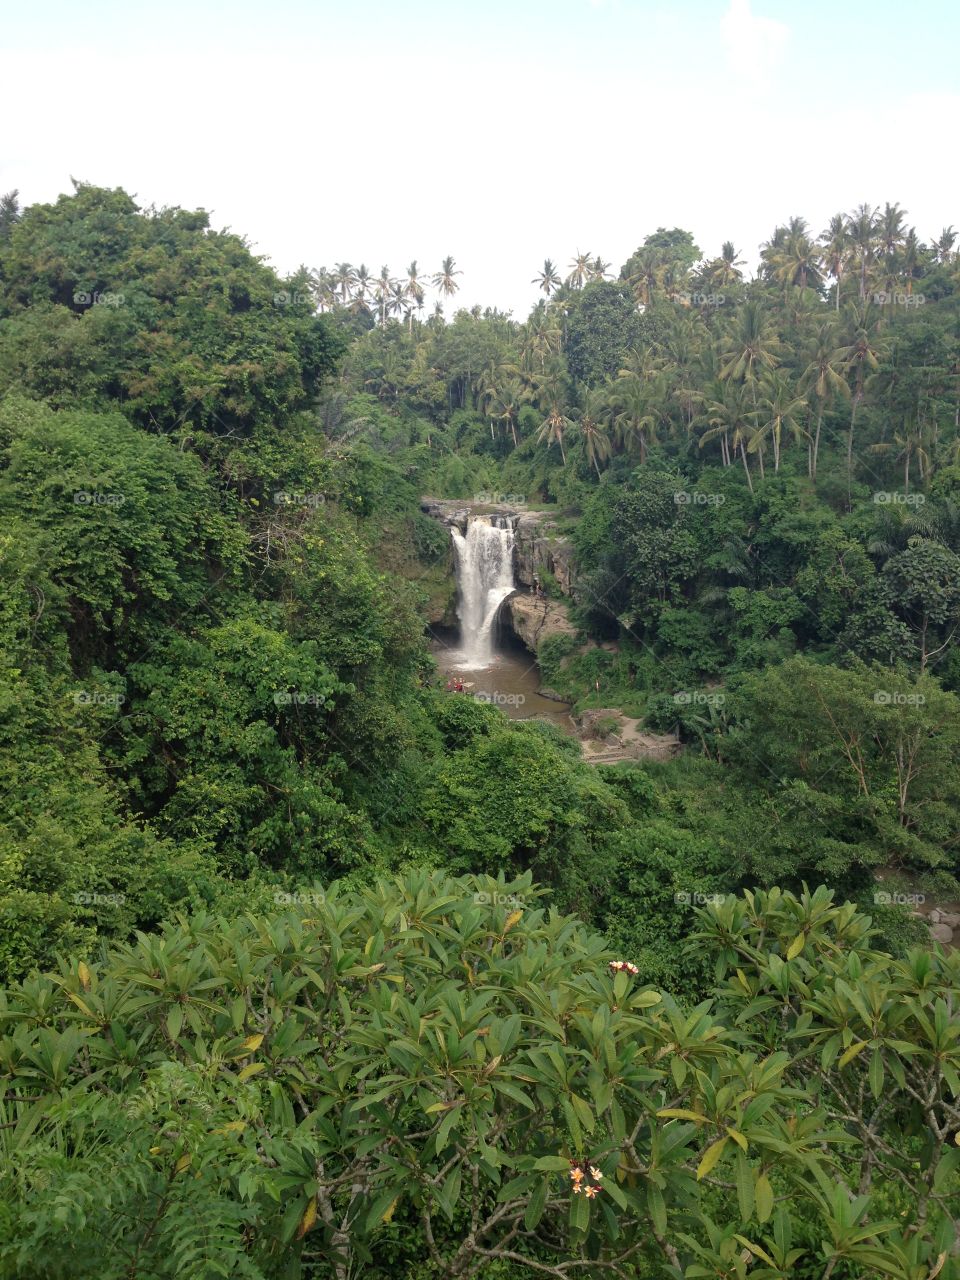 #water #waterfall #nature #foap #instagram